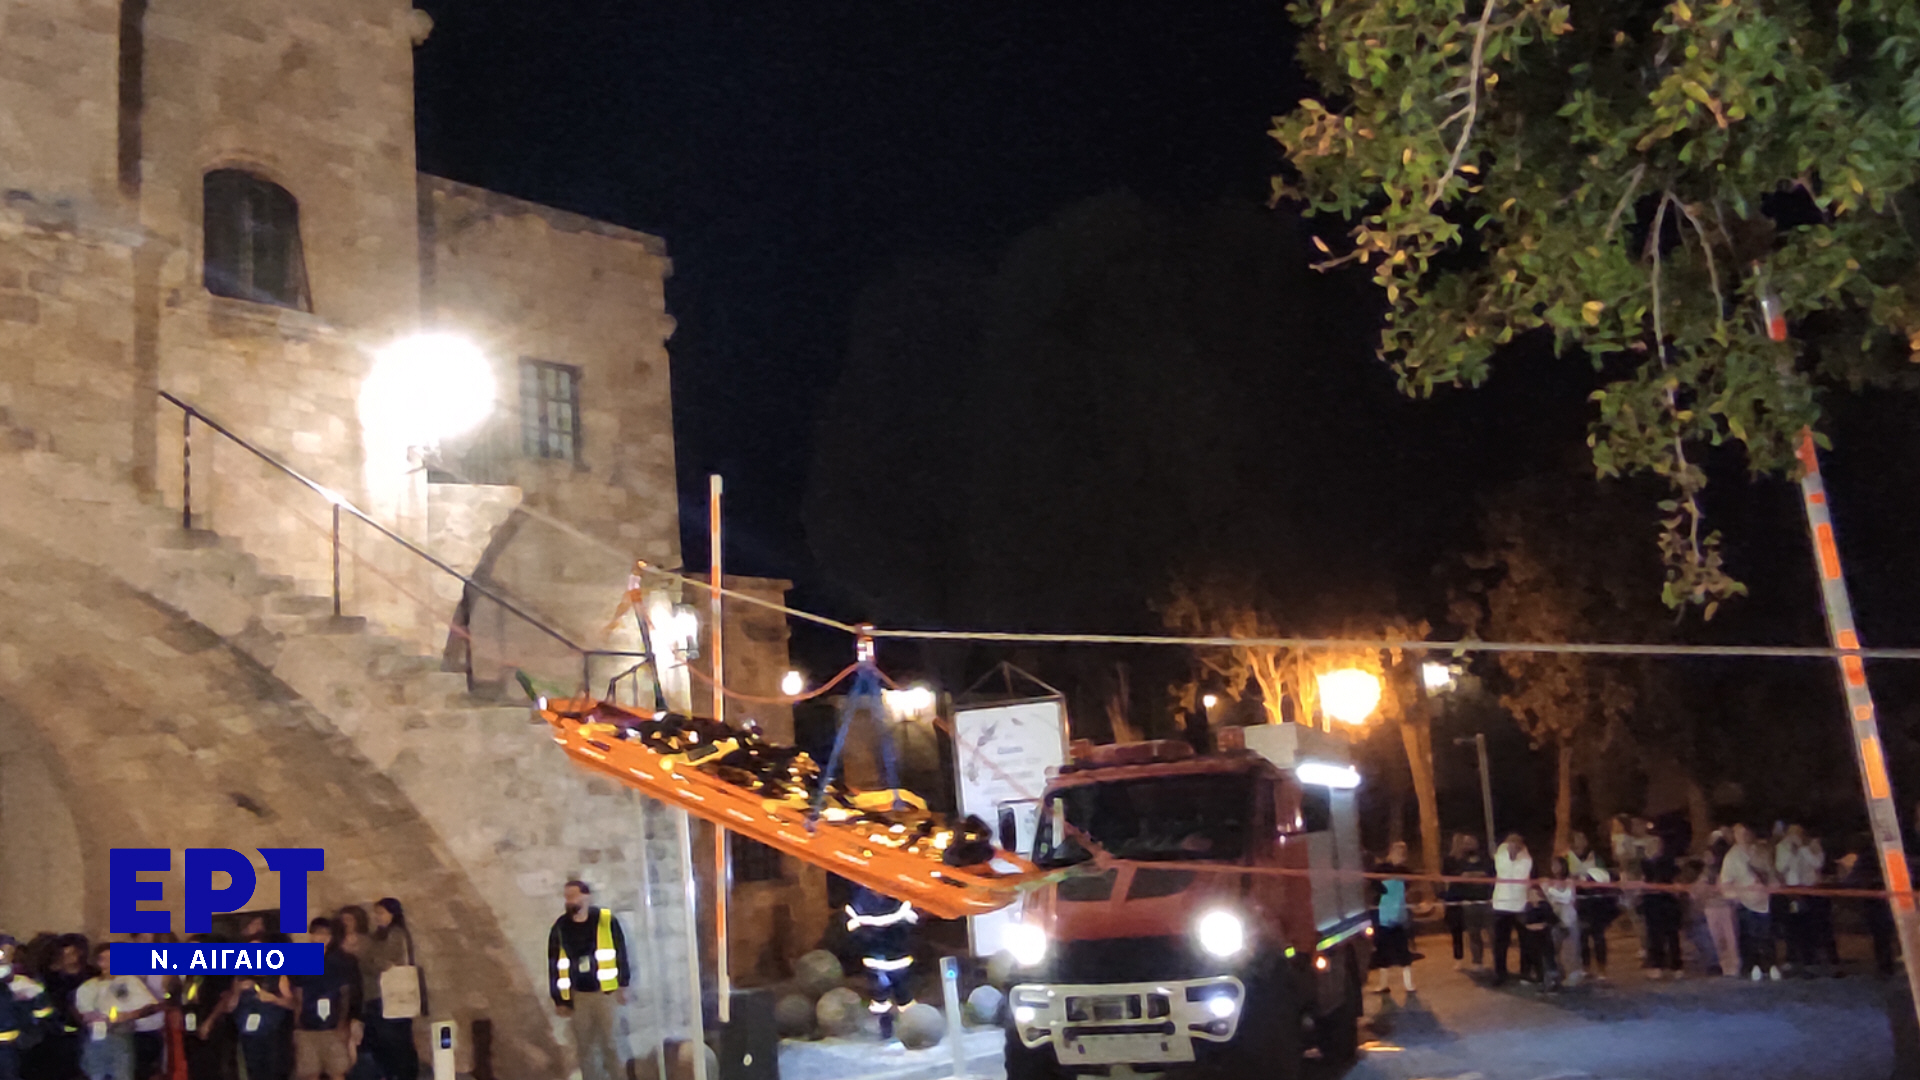 Εντυπωσιακές νυχτερινές ασκήσεις σε περιπτώσεις σεισμού και πυρκαγιάς στη Μεσαιωνική πόλη της Ρόδου